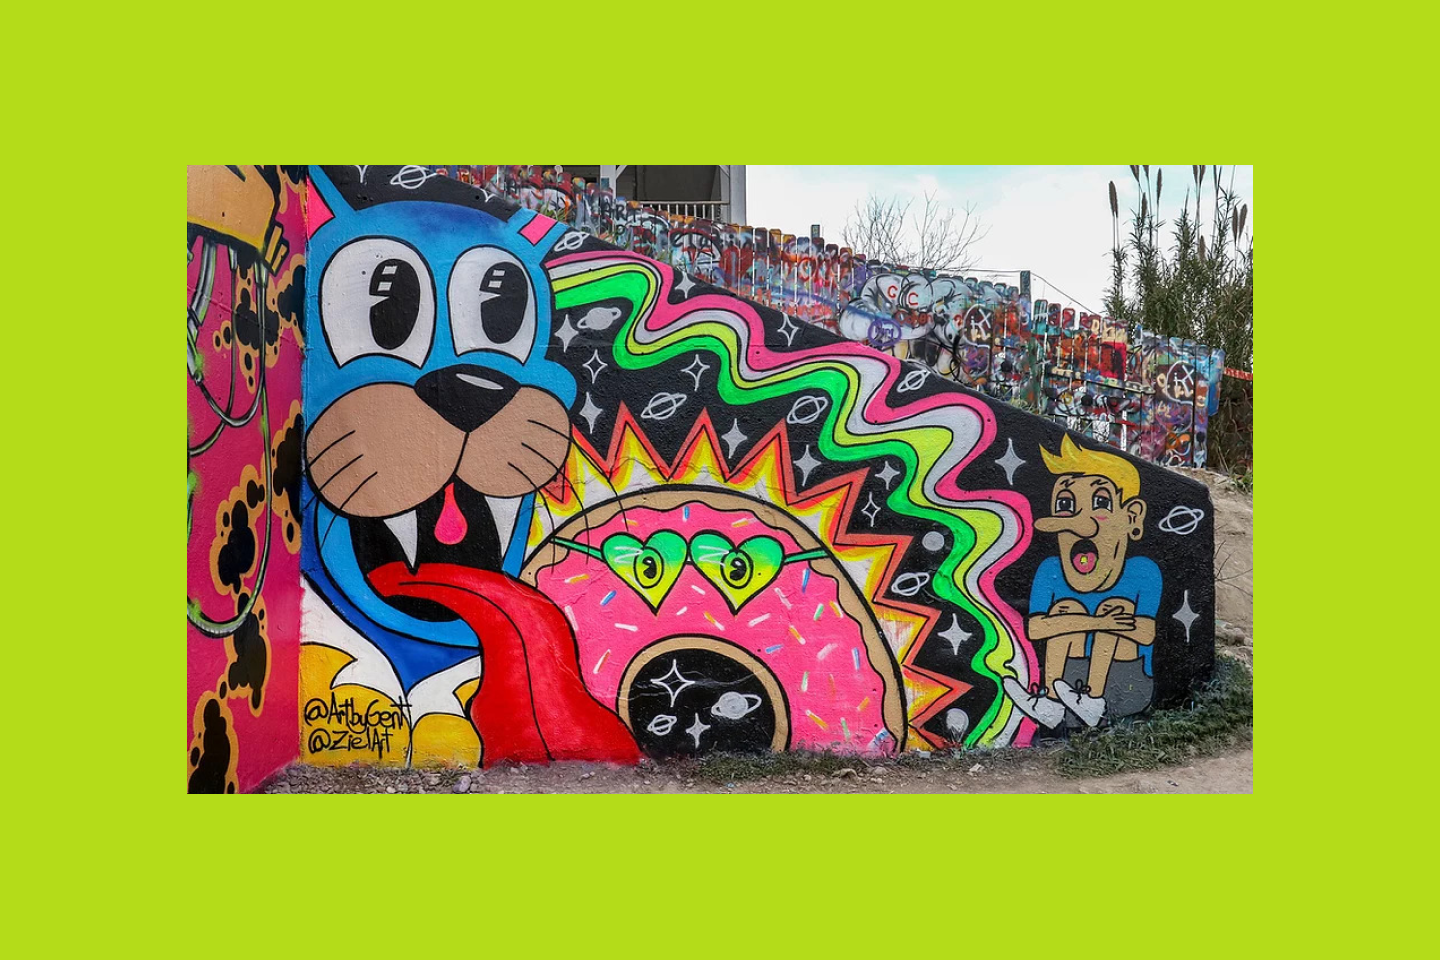 Muro artístico con un grafiti de un gato de estilo neón, un dónut y una persona.